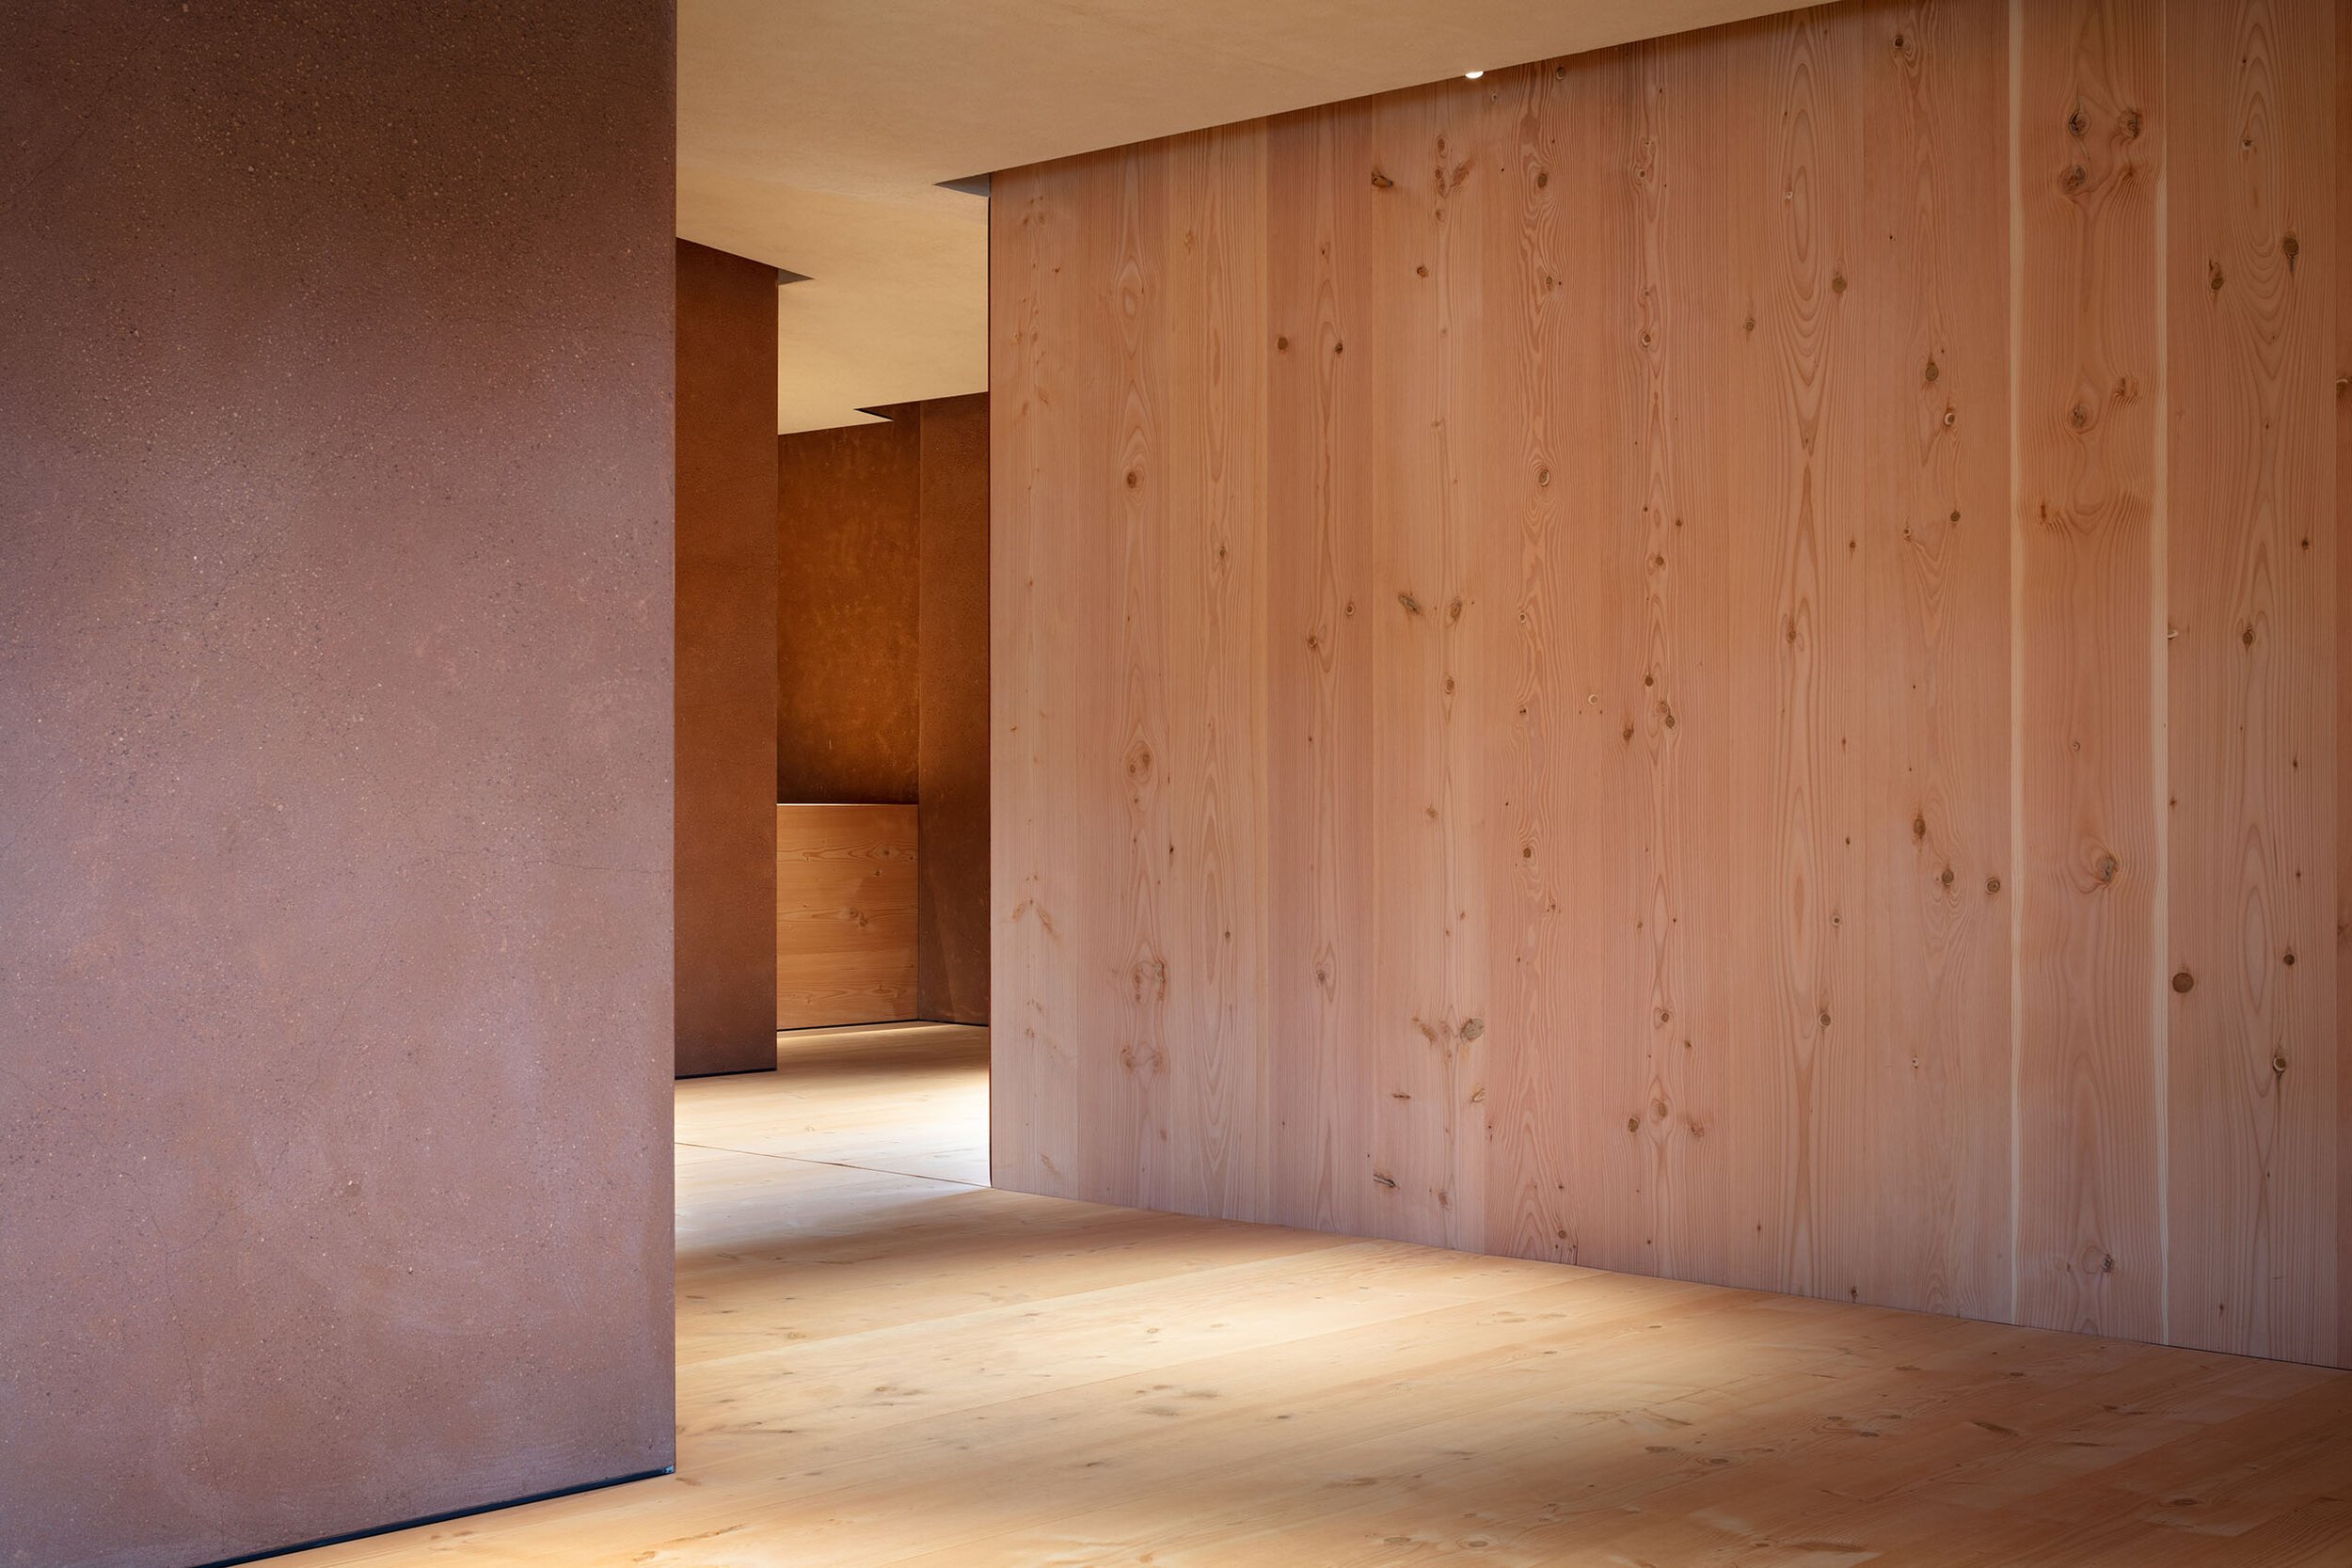  TERUHIRO YANAGIHARA STUDIOの柳原照弘がデザインした1616/arita japan 有田ショールームの壁まわり 